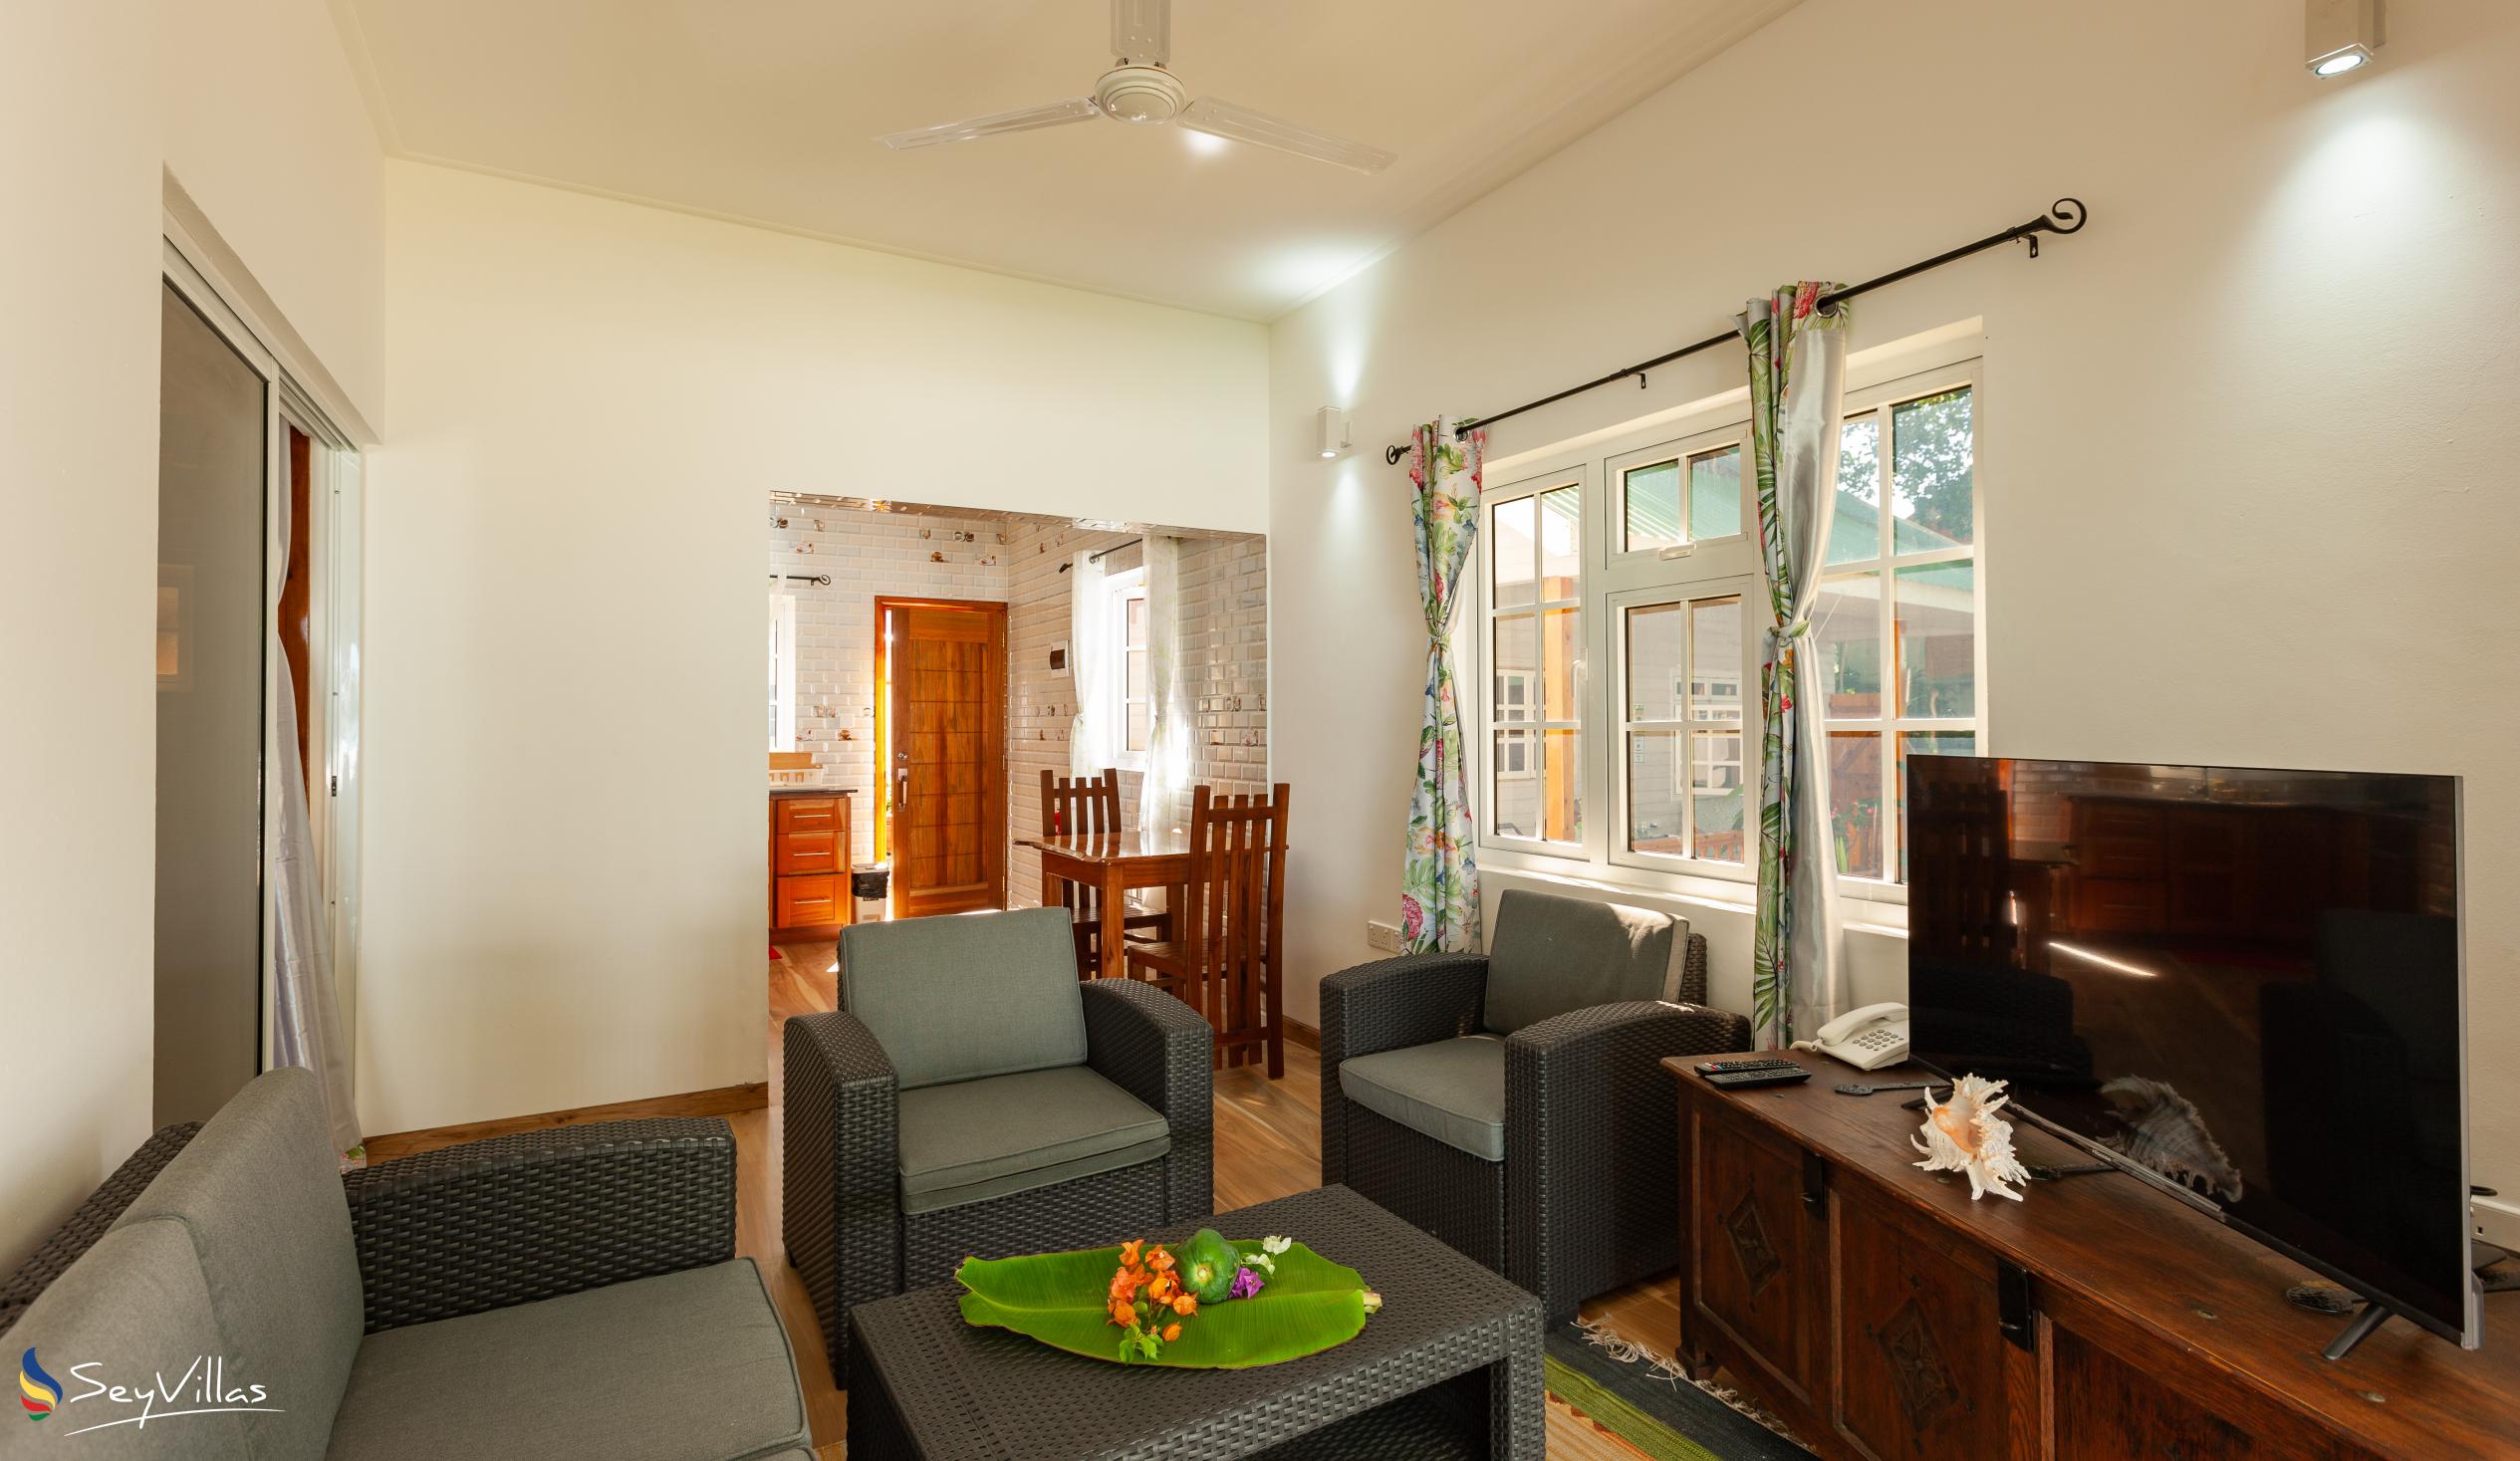 Foto 46: Villa Charette - Deluxe Appartement mit Meerblick - La Digue (Seychellen)